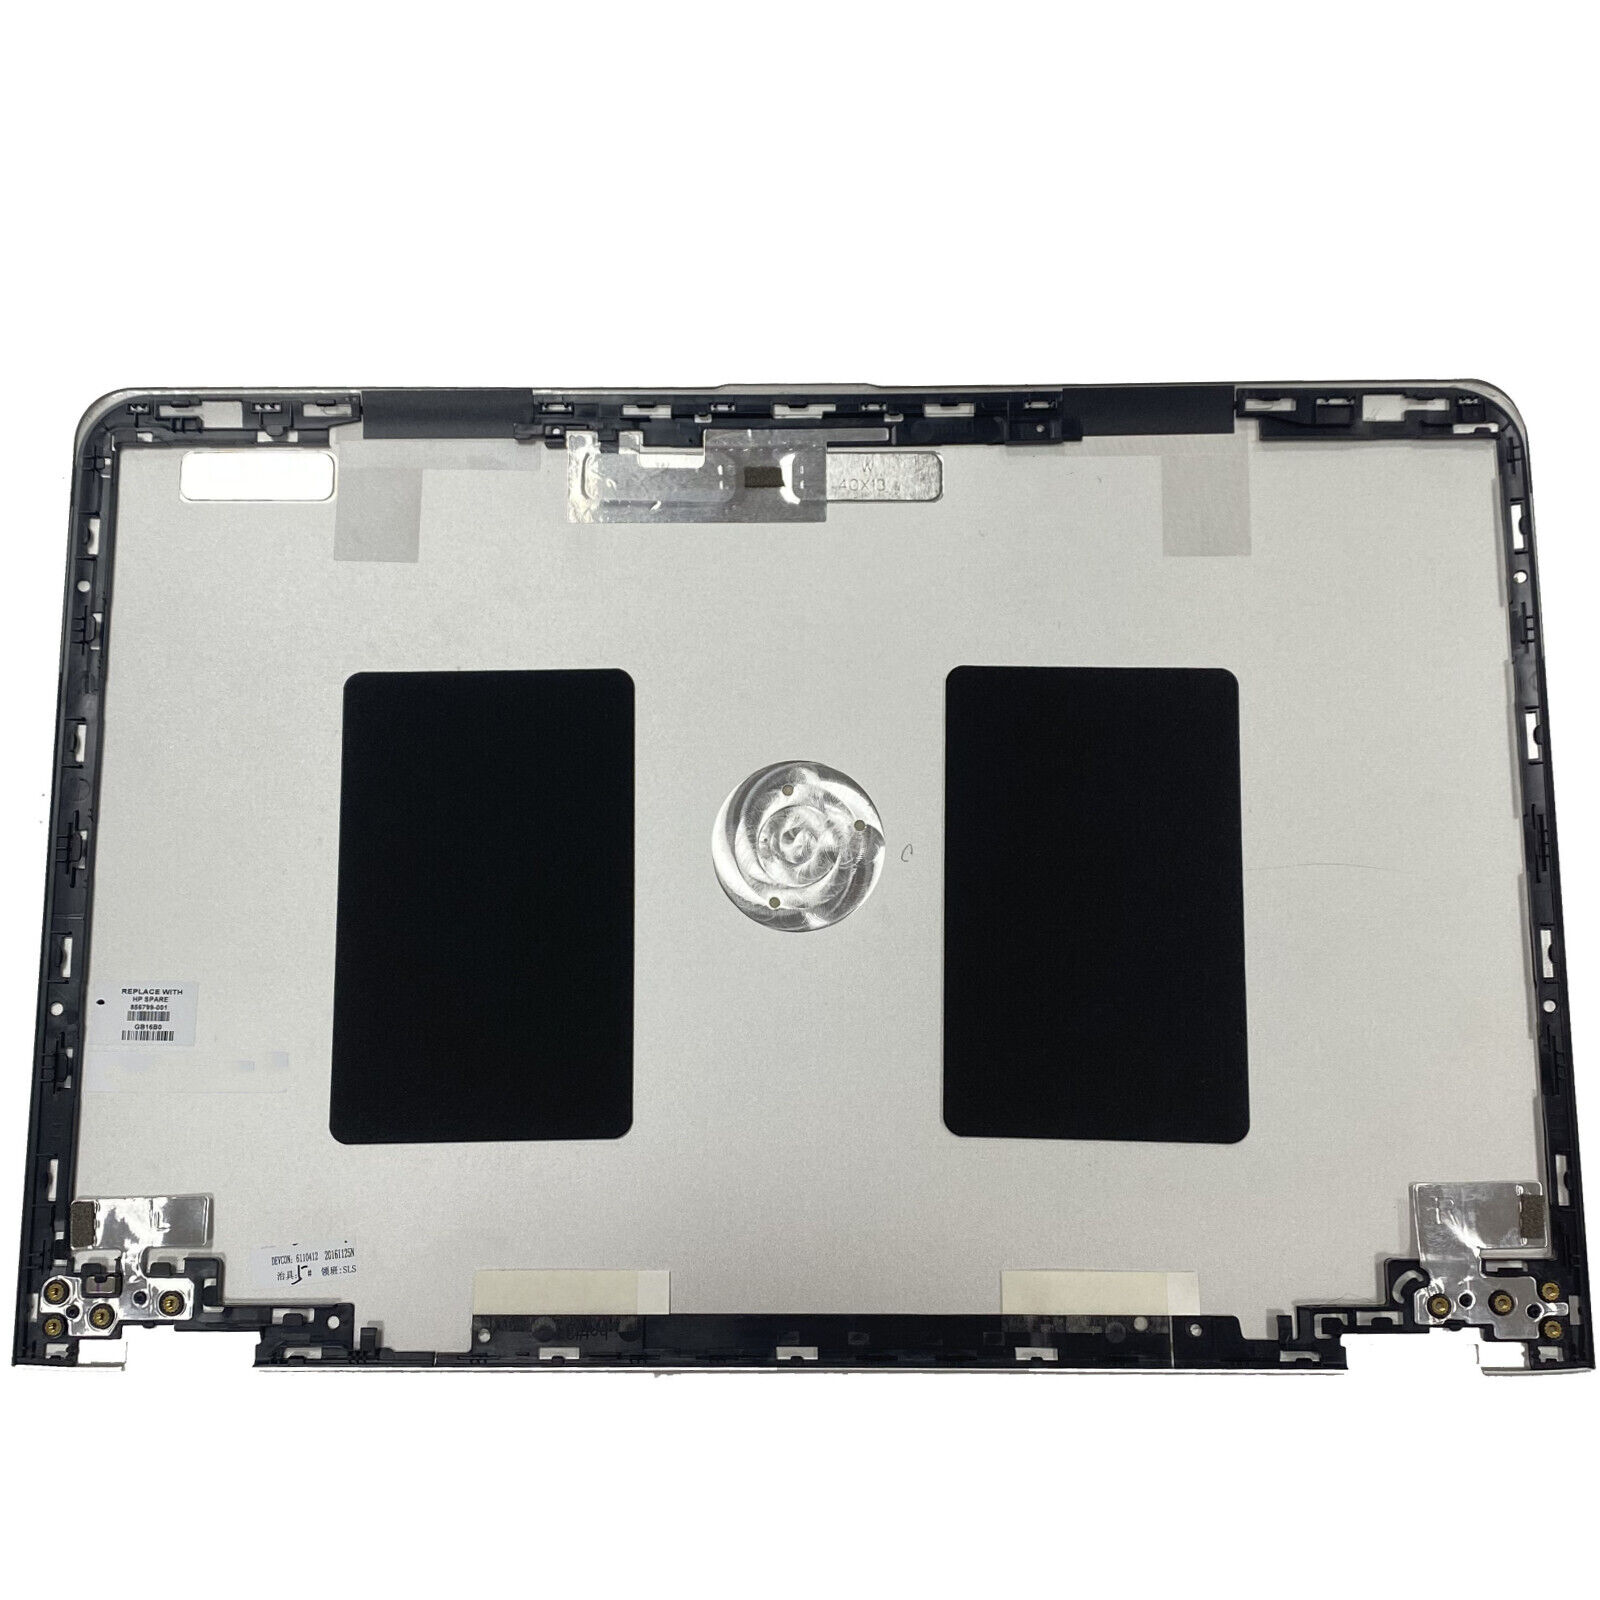 LCD Back Cover for HP ENVY X360 m6-aq103dx m6-aq105dx M6-AQ Rear Lid 856799-001